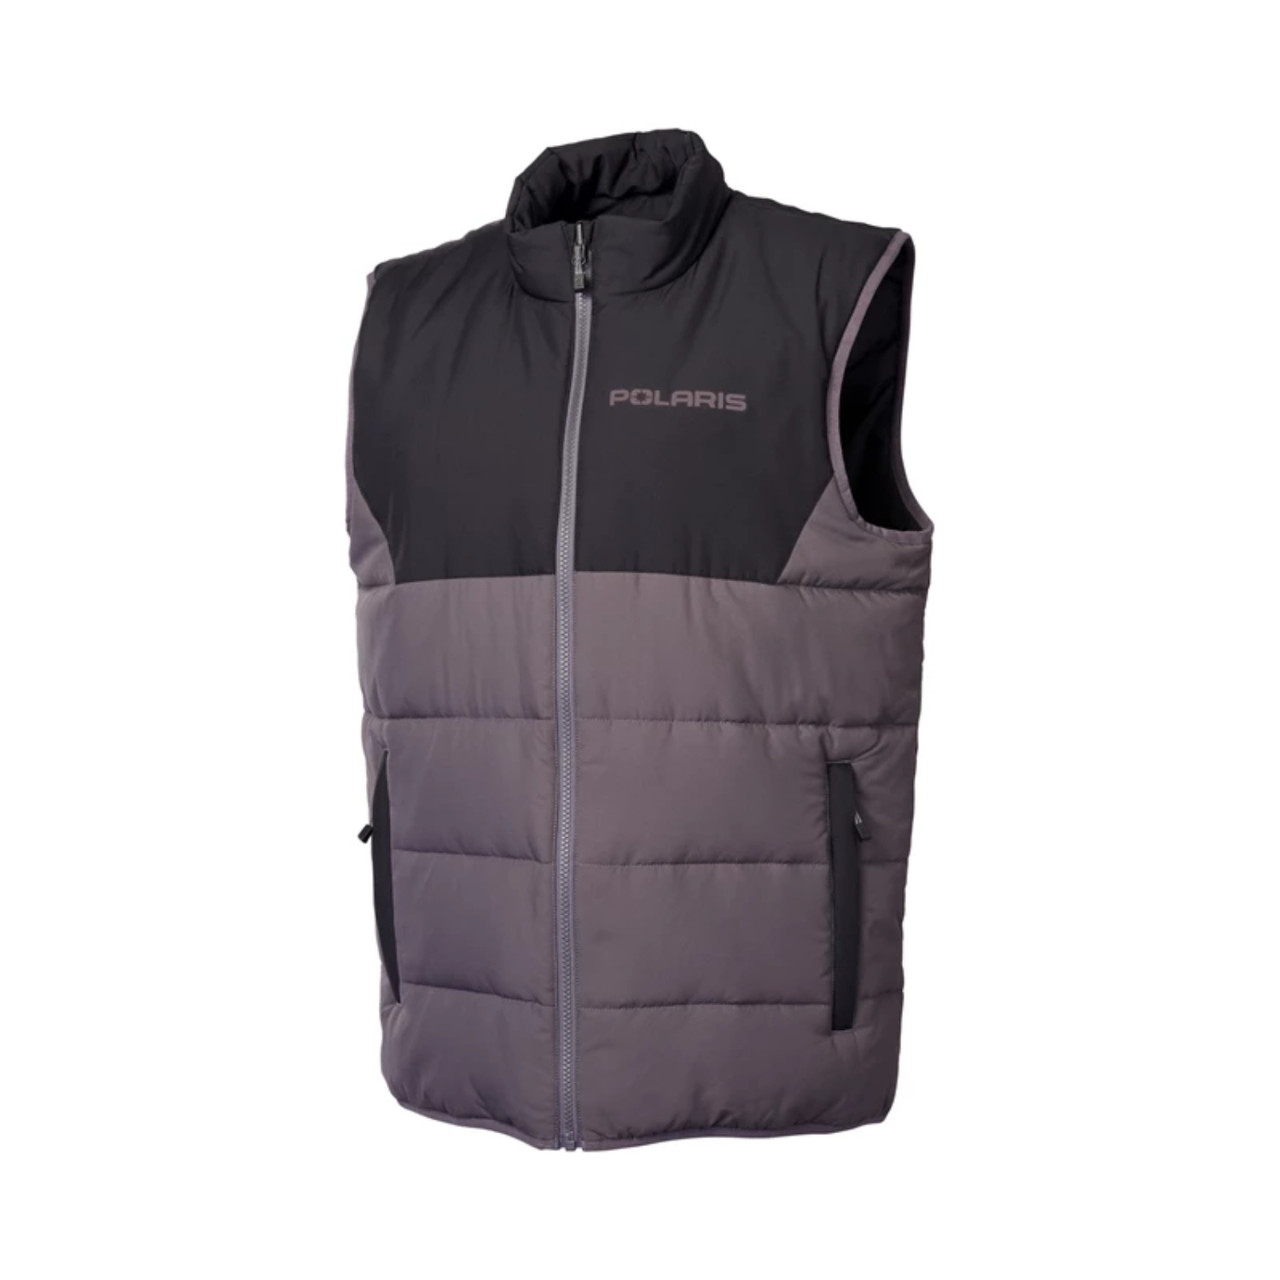 Polaris New OEM Black/Gray Men's Reversible Windbreak Revolve Vest, 286256503